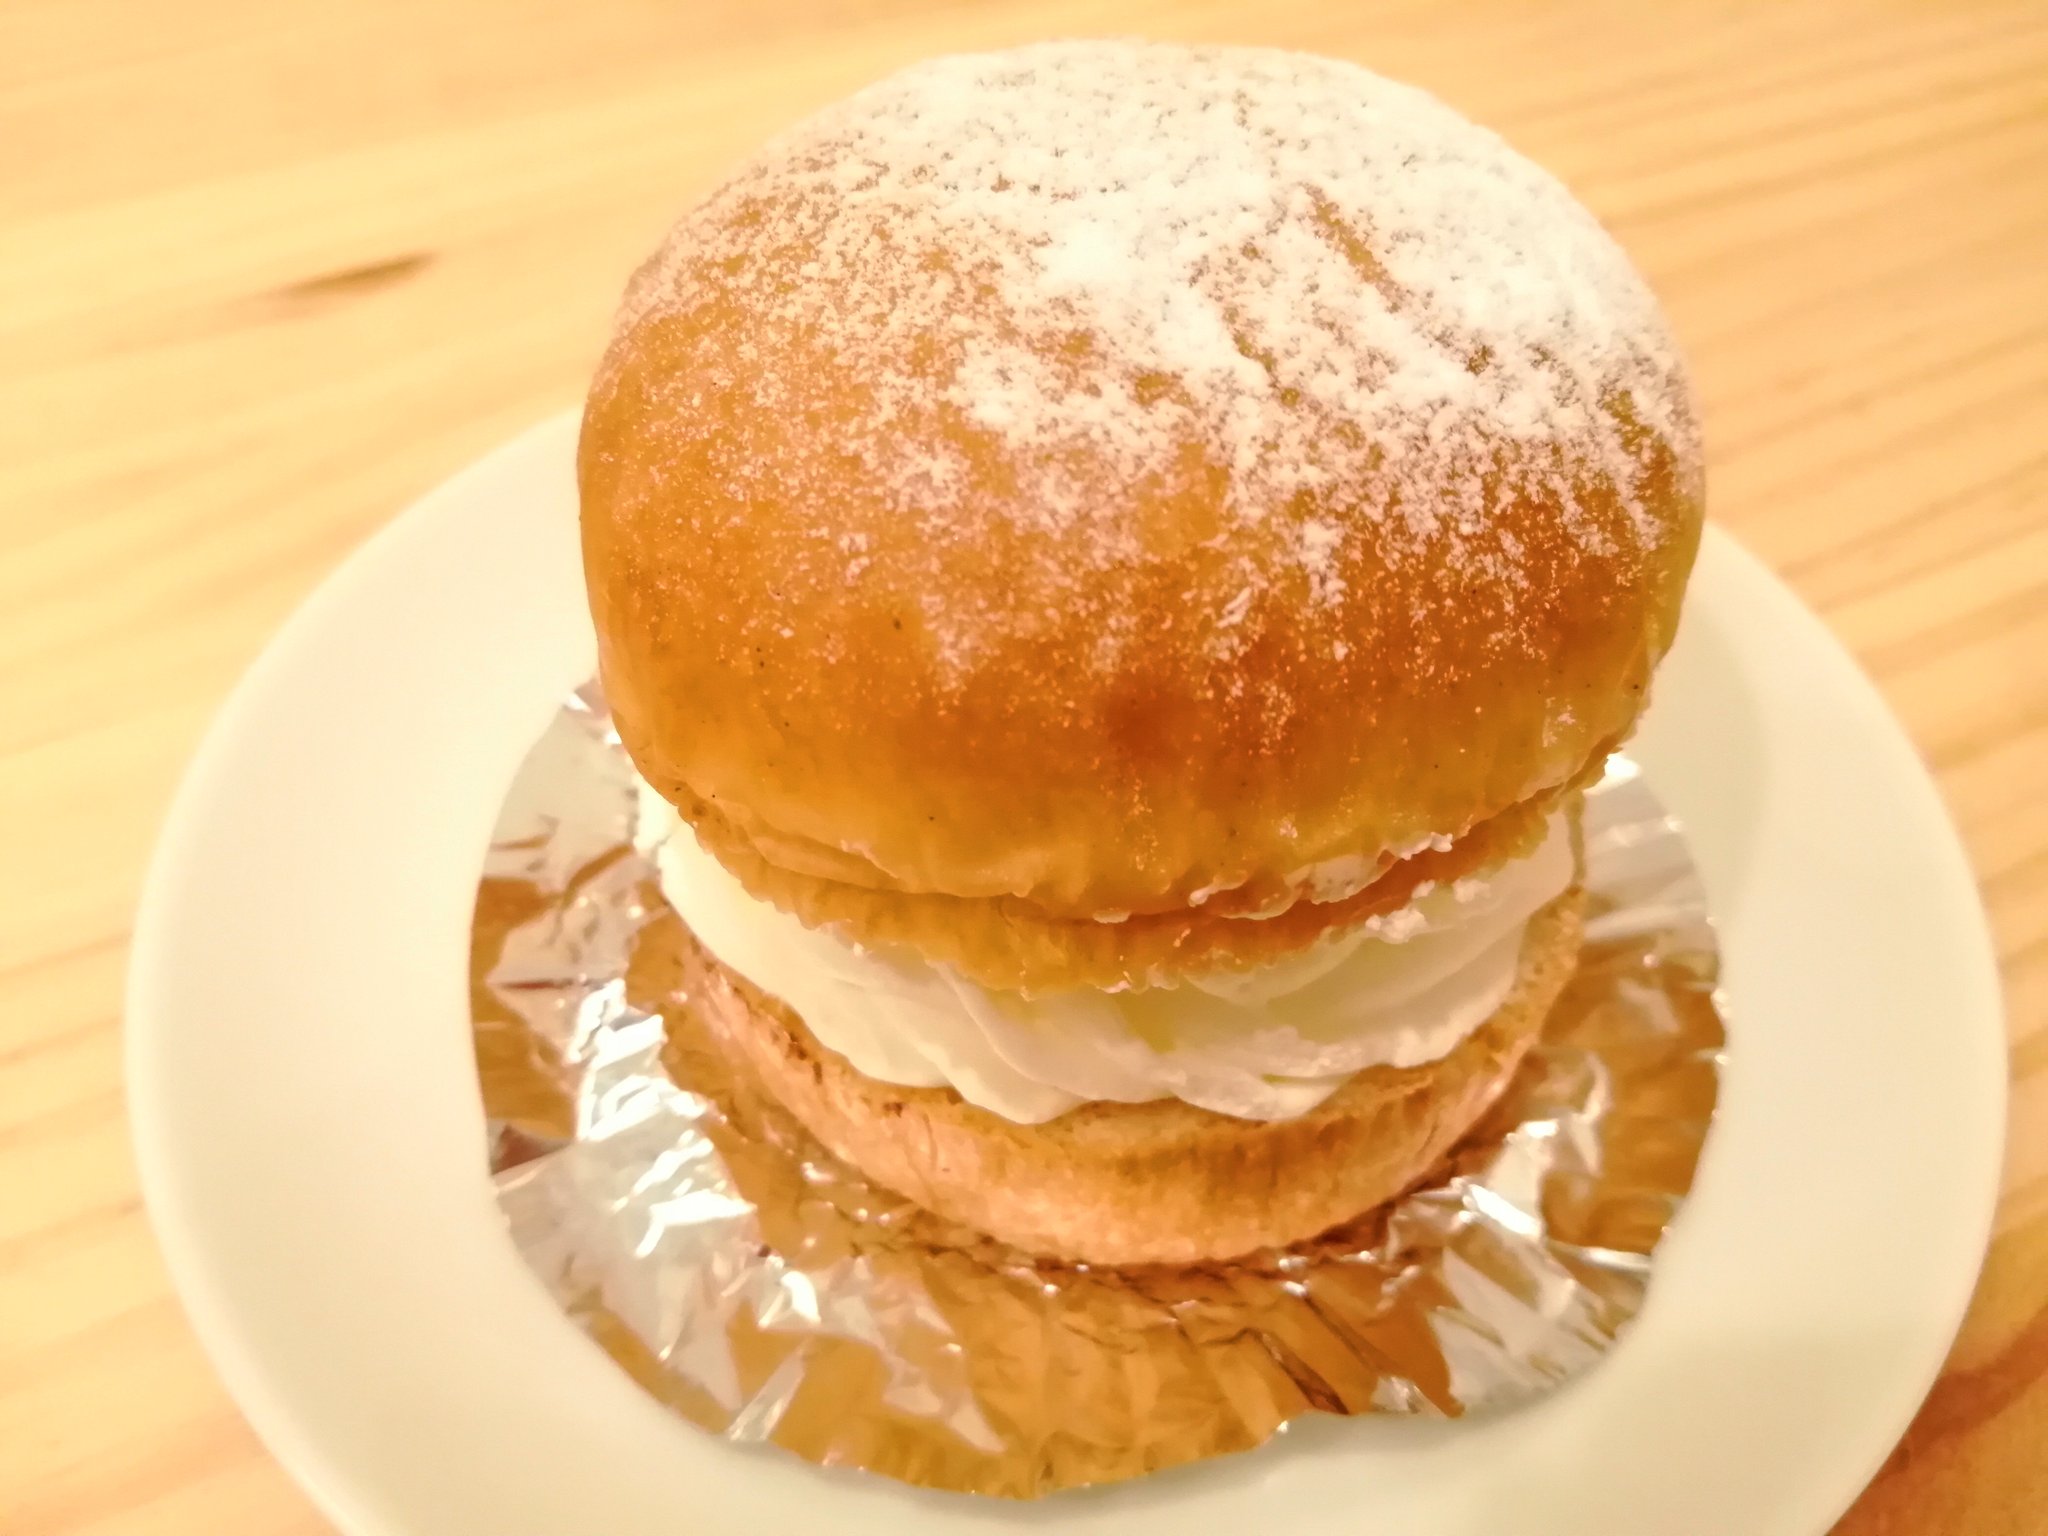 繭未 歩いててたまたま見つけた テイクアウト 初めて食べた スウェーデンのお菓子 ビッグマムが大好きなセムラ オスロコーヒー Onepiece ワンピース ビッグマム セムラ T Co Xvyc73rhau Twitter